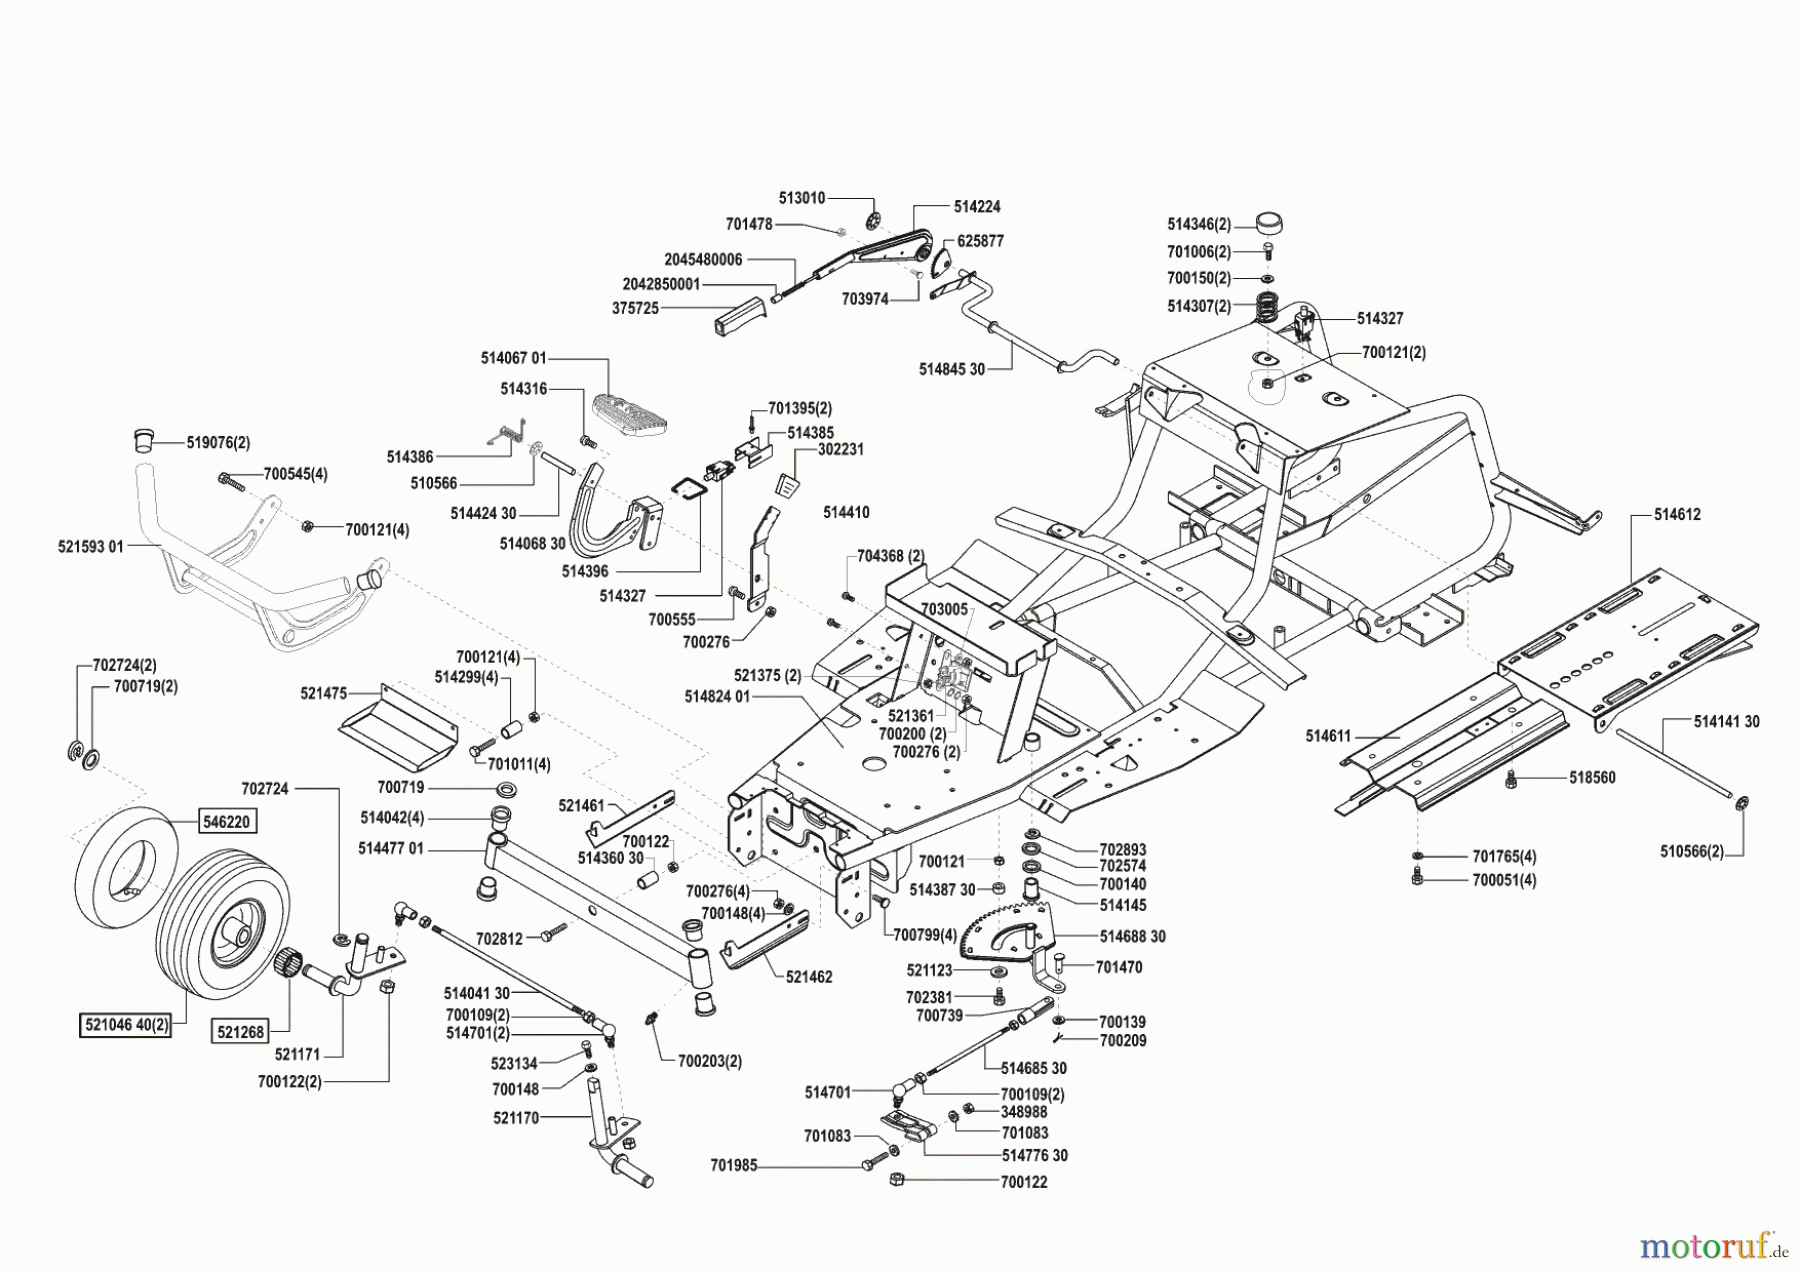  Concord Gartentechnik Rasentraktor T15-102 vor 04/2002 Seite 2